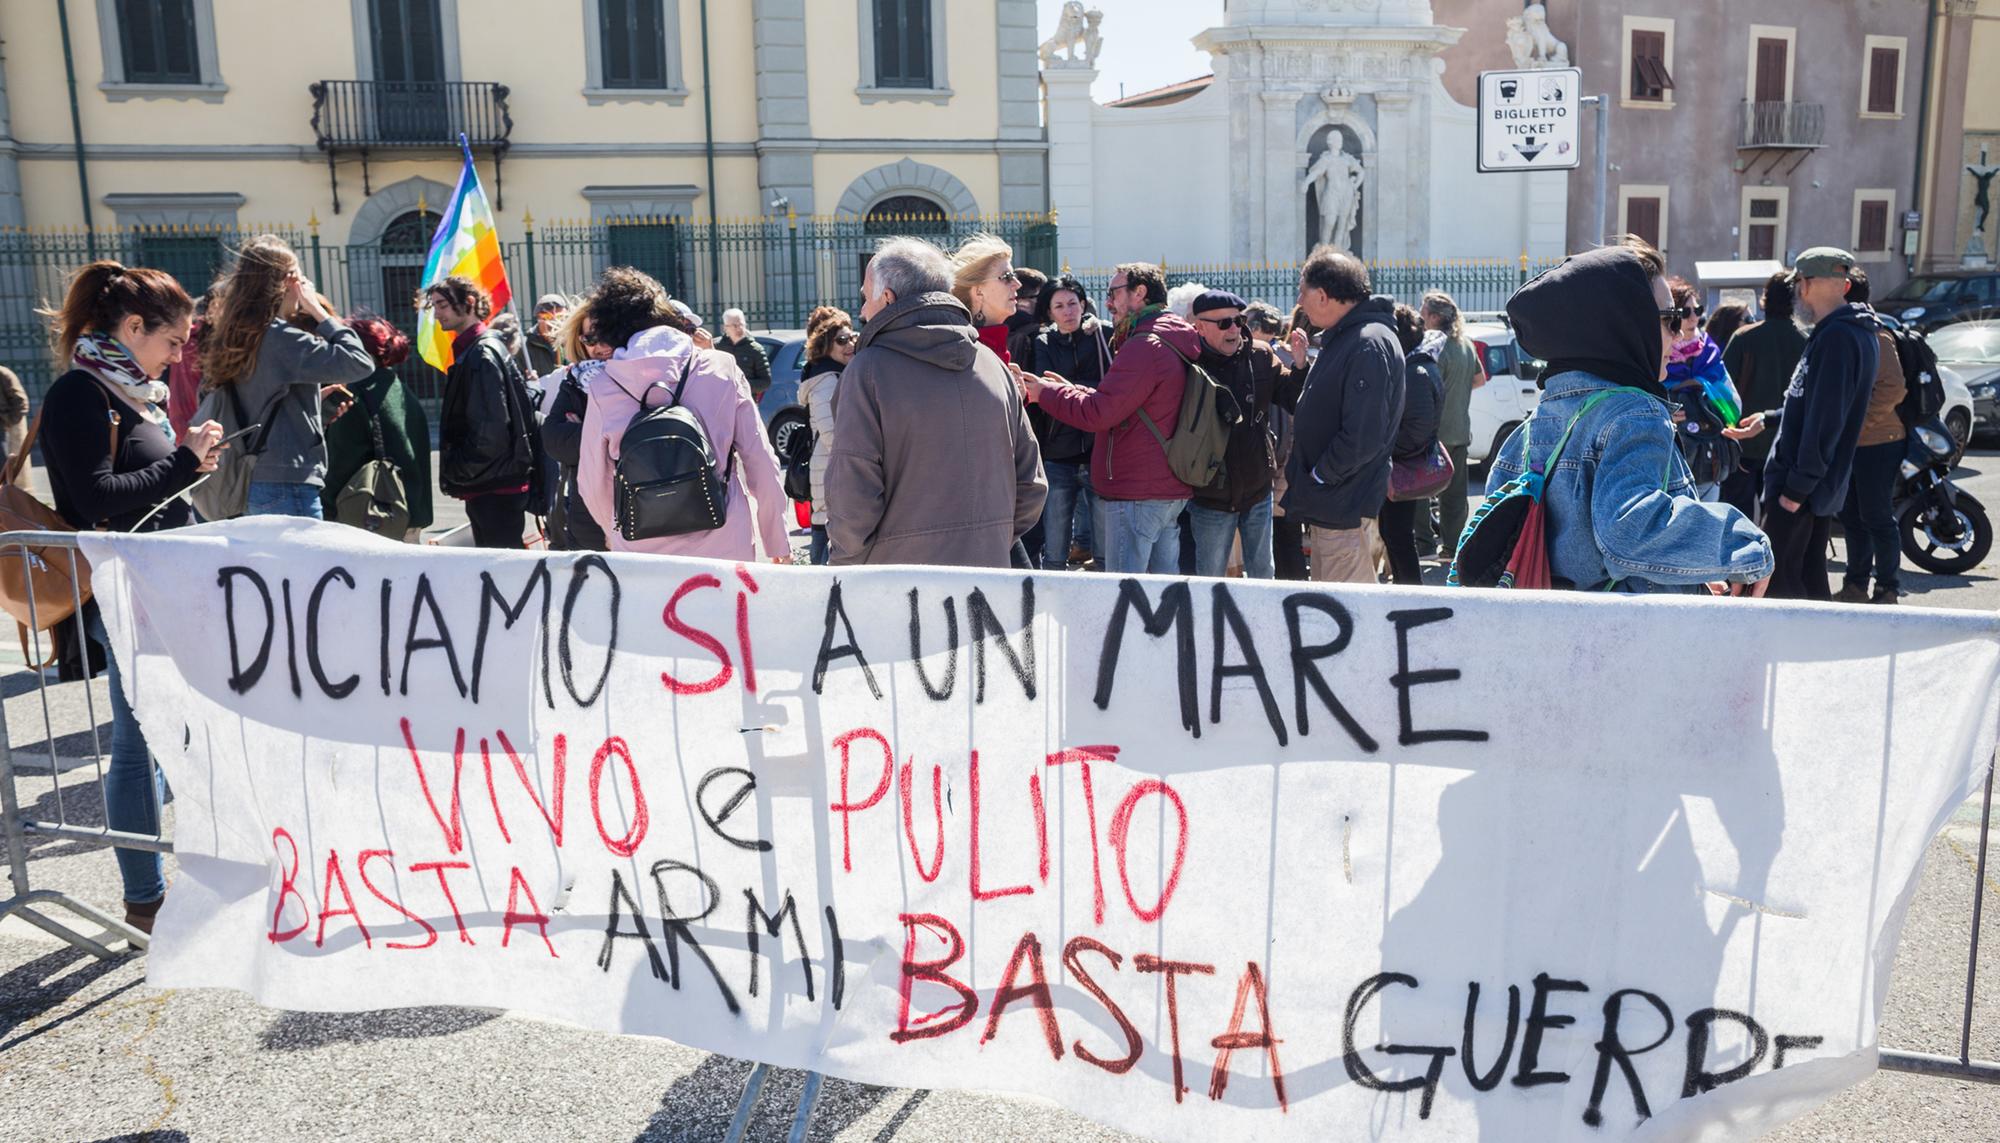 Protesta Italia mare vivo e pulito - 1